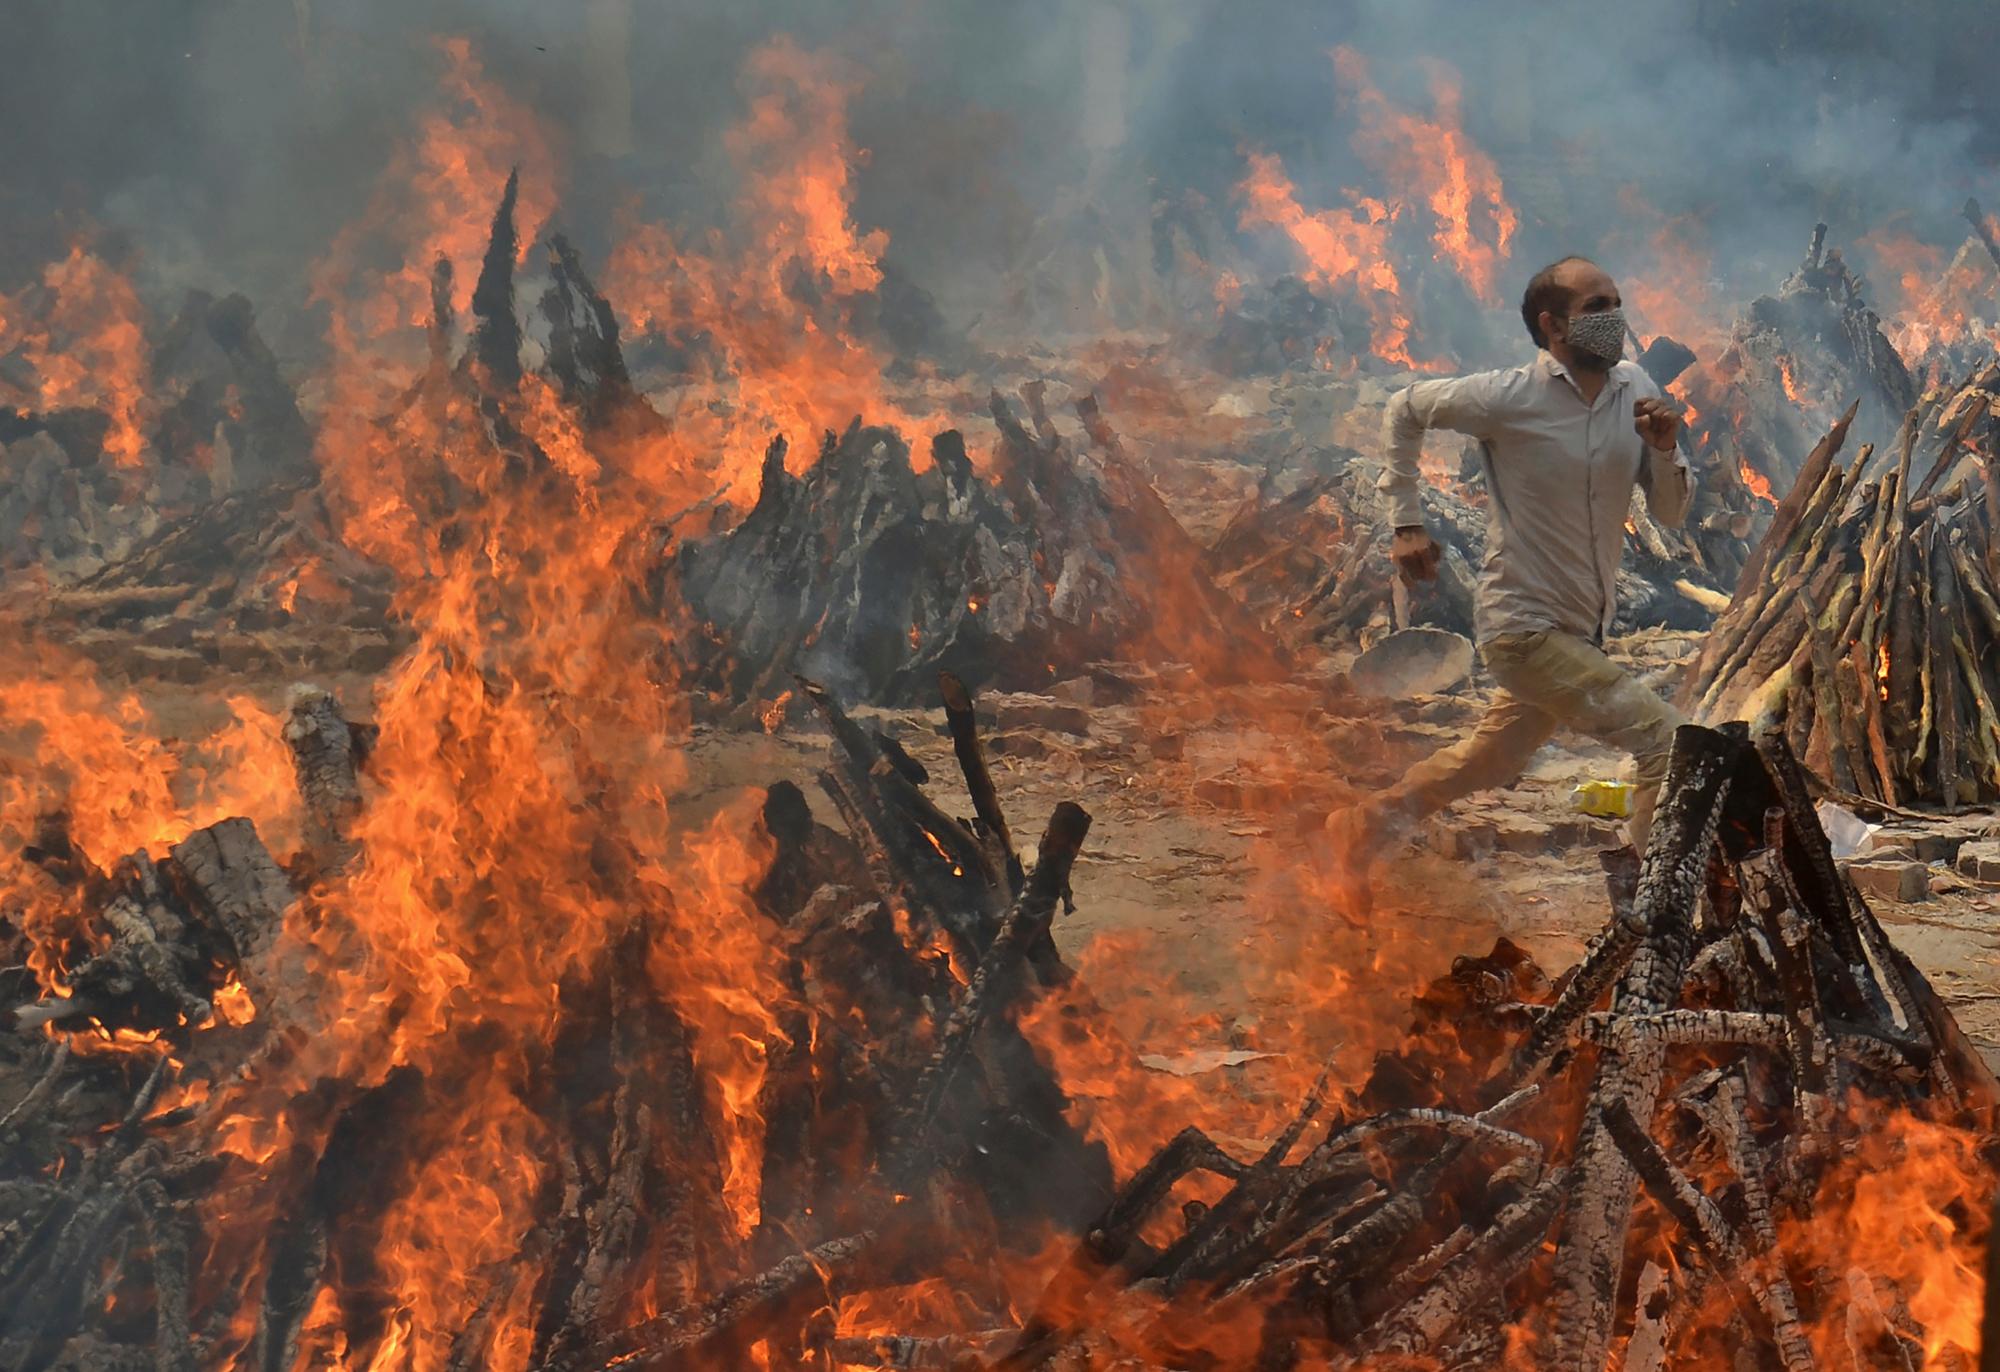  سوزاندن اجساد قربانیان کووید-۱۹ در هند